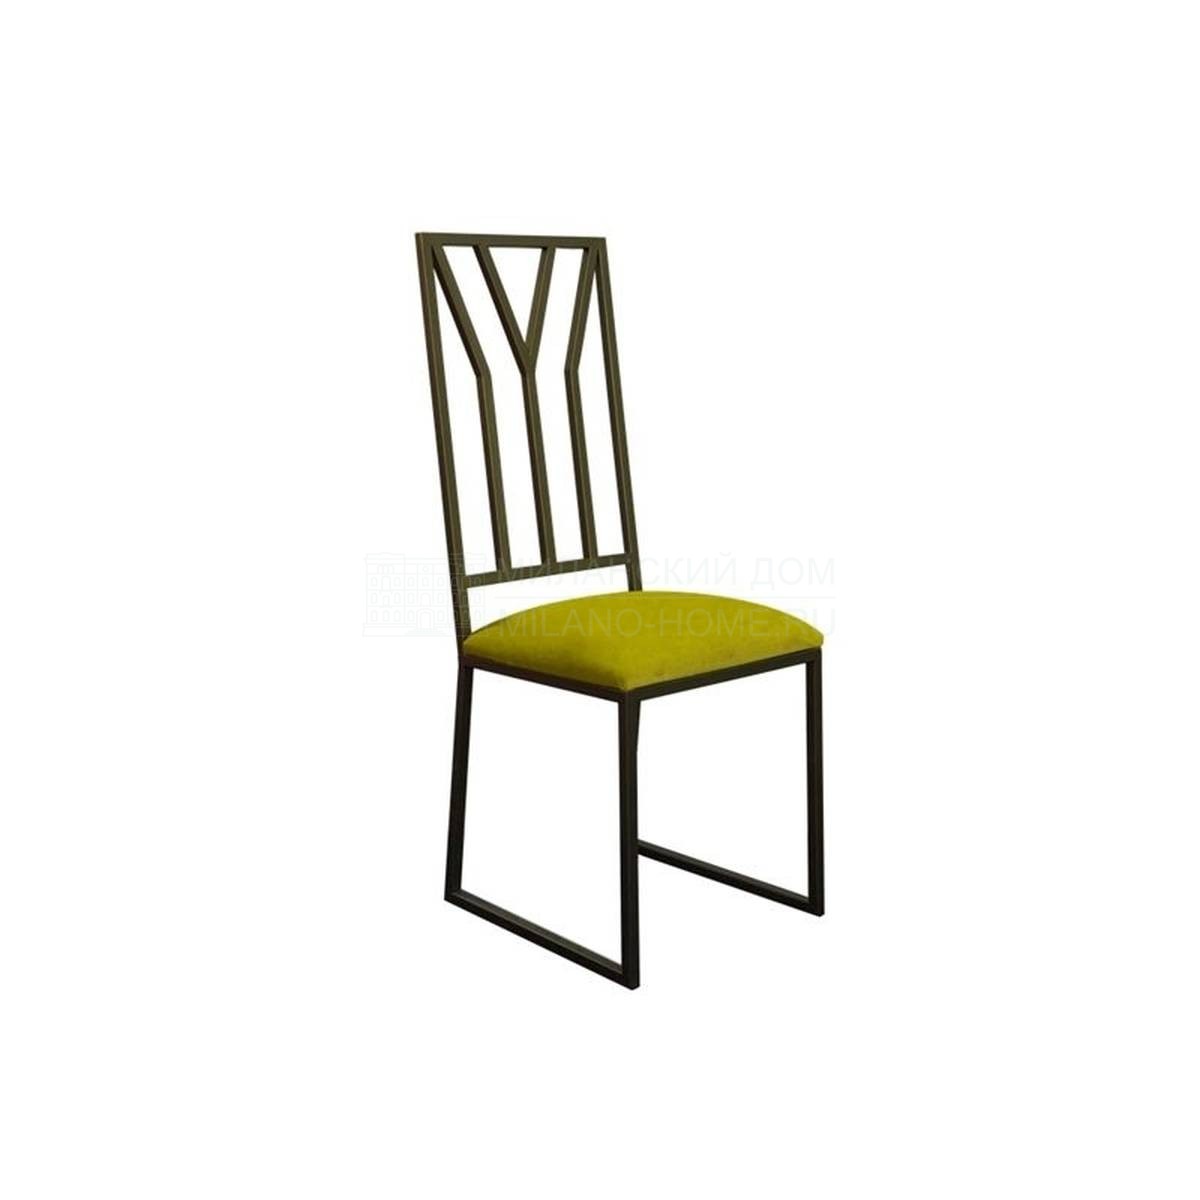 Стул H-3078 chair из Испании фабрики GUADARTE